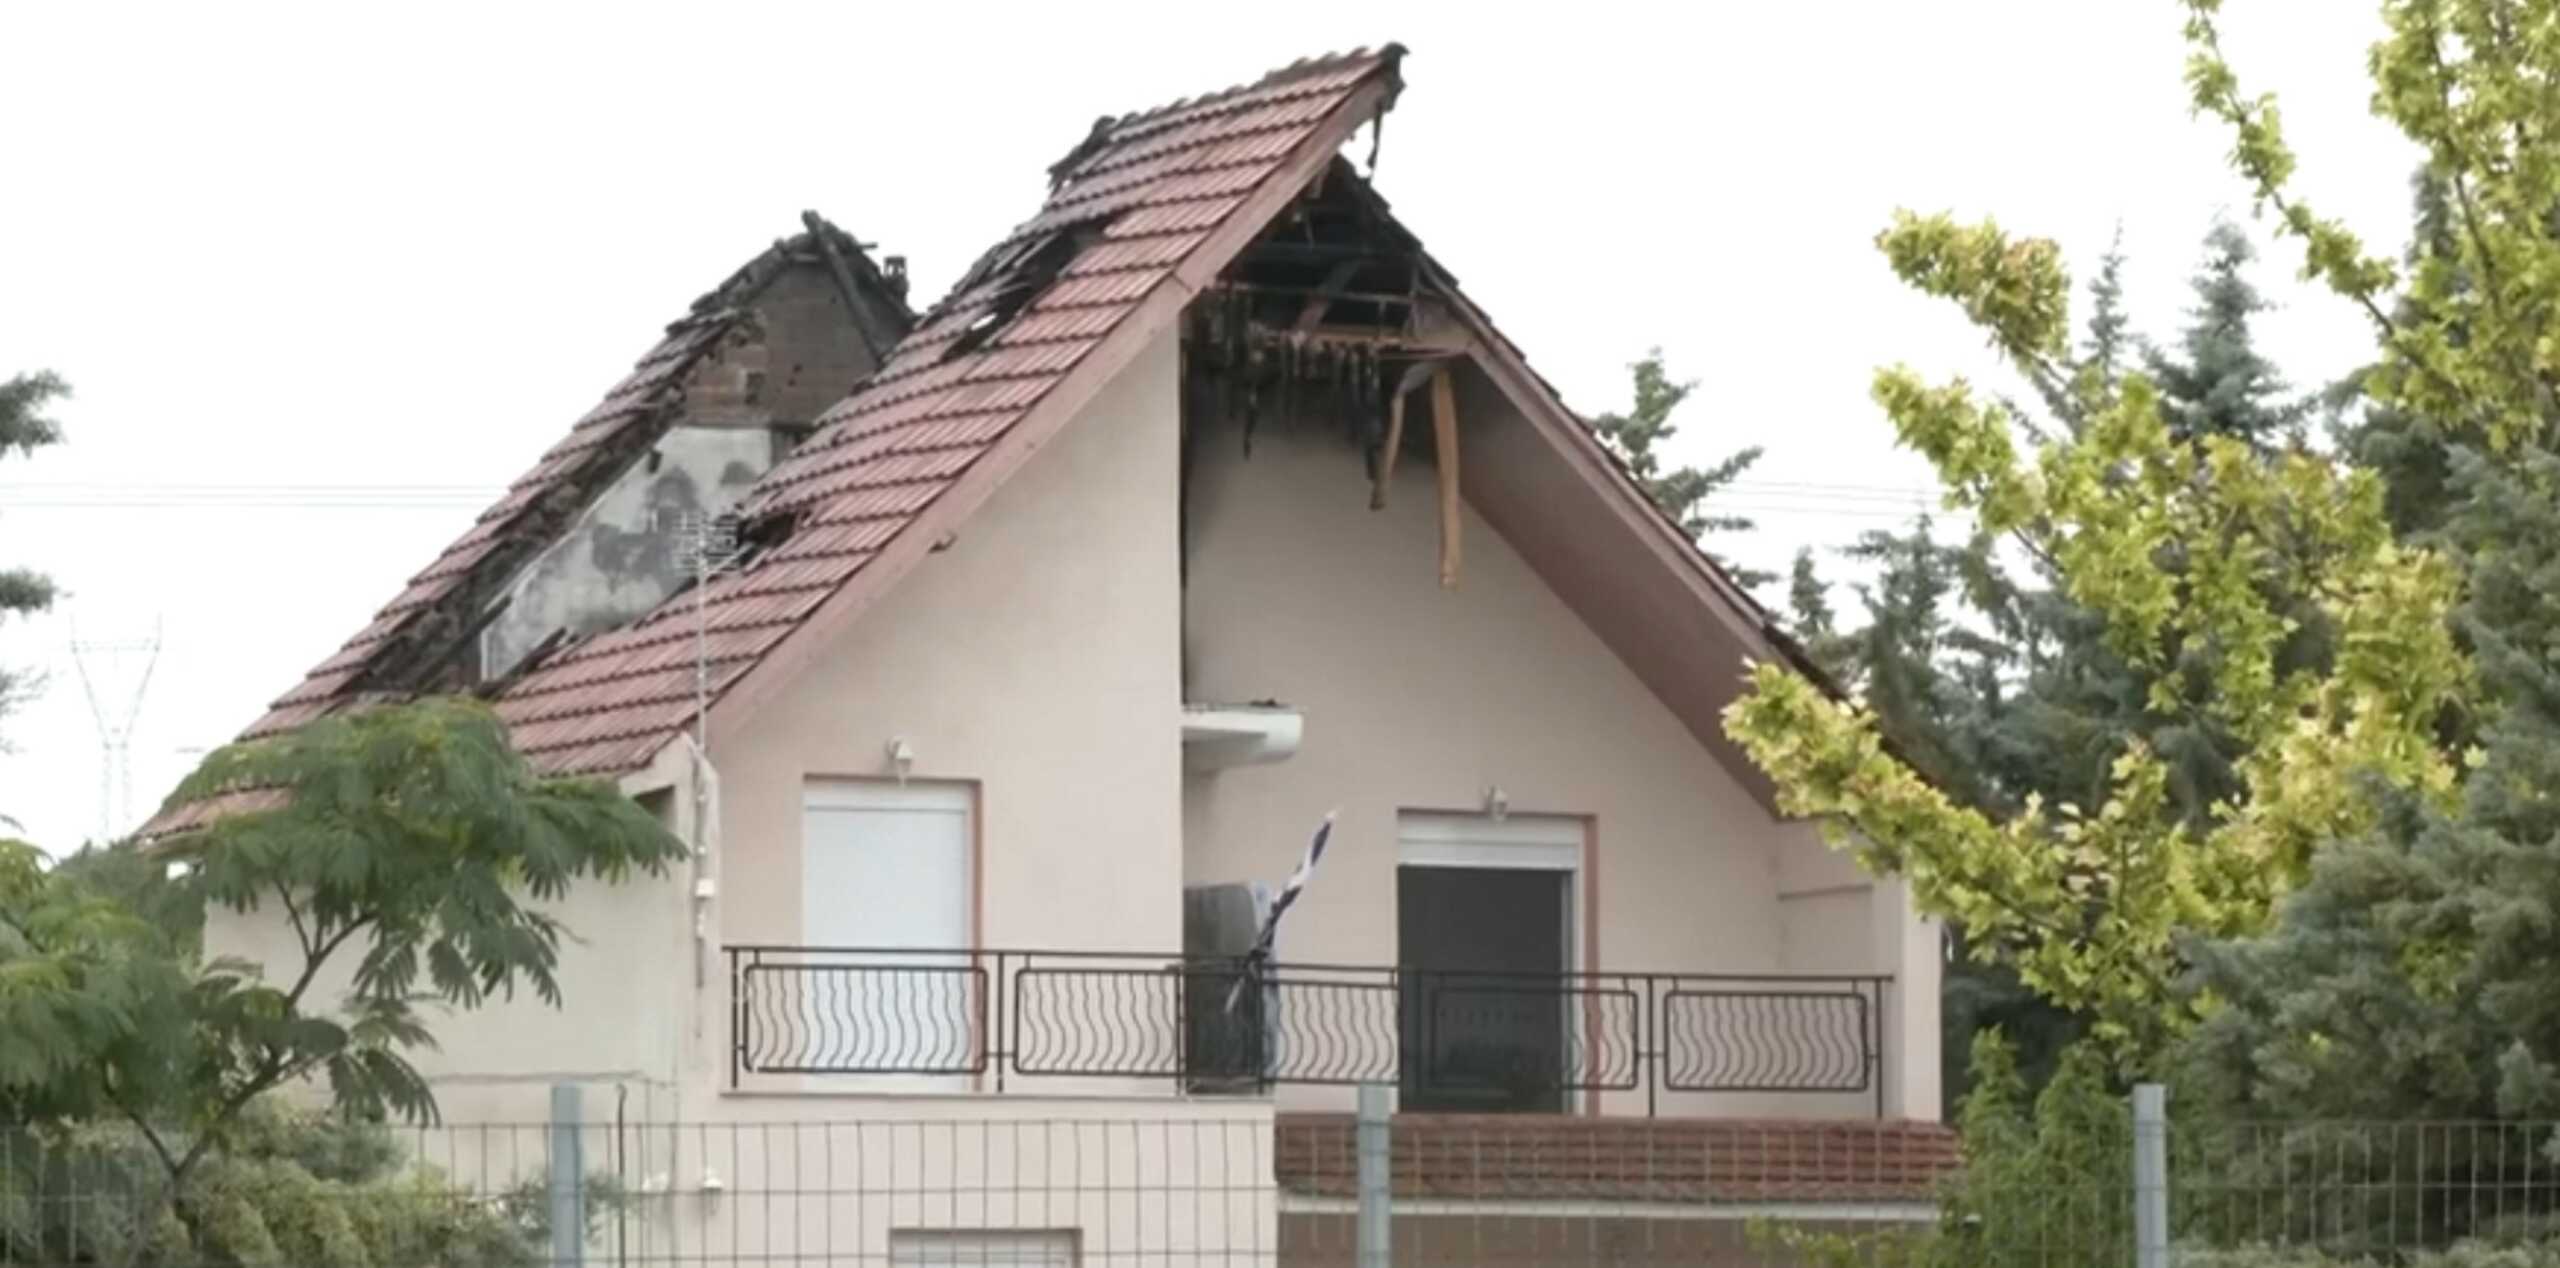 Λάρισα: Κεραυνός διέλυσε αυτή τη στέγη σπιτιού – Τι λέει η οικογένεια για τις σκηνές που εκτυλίχθηκαν